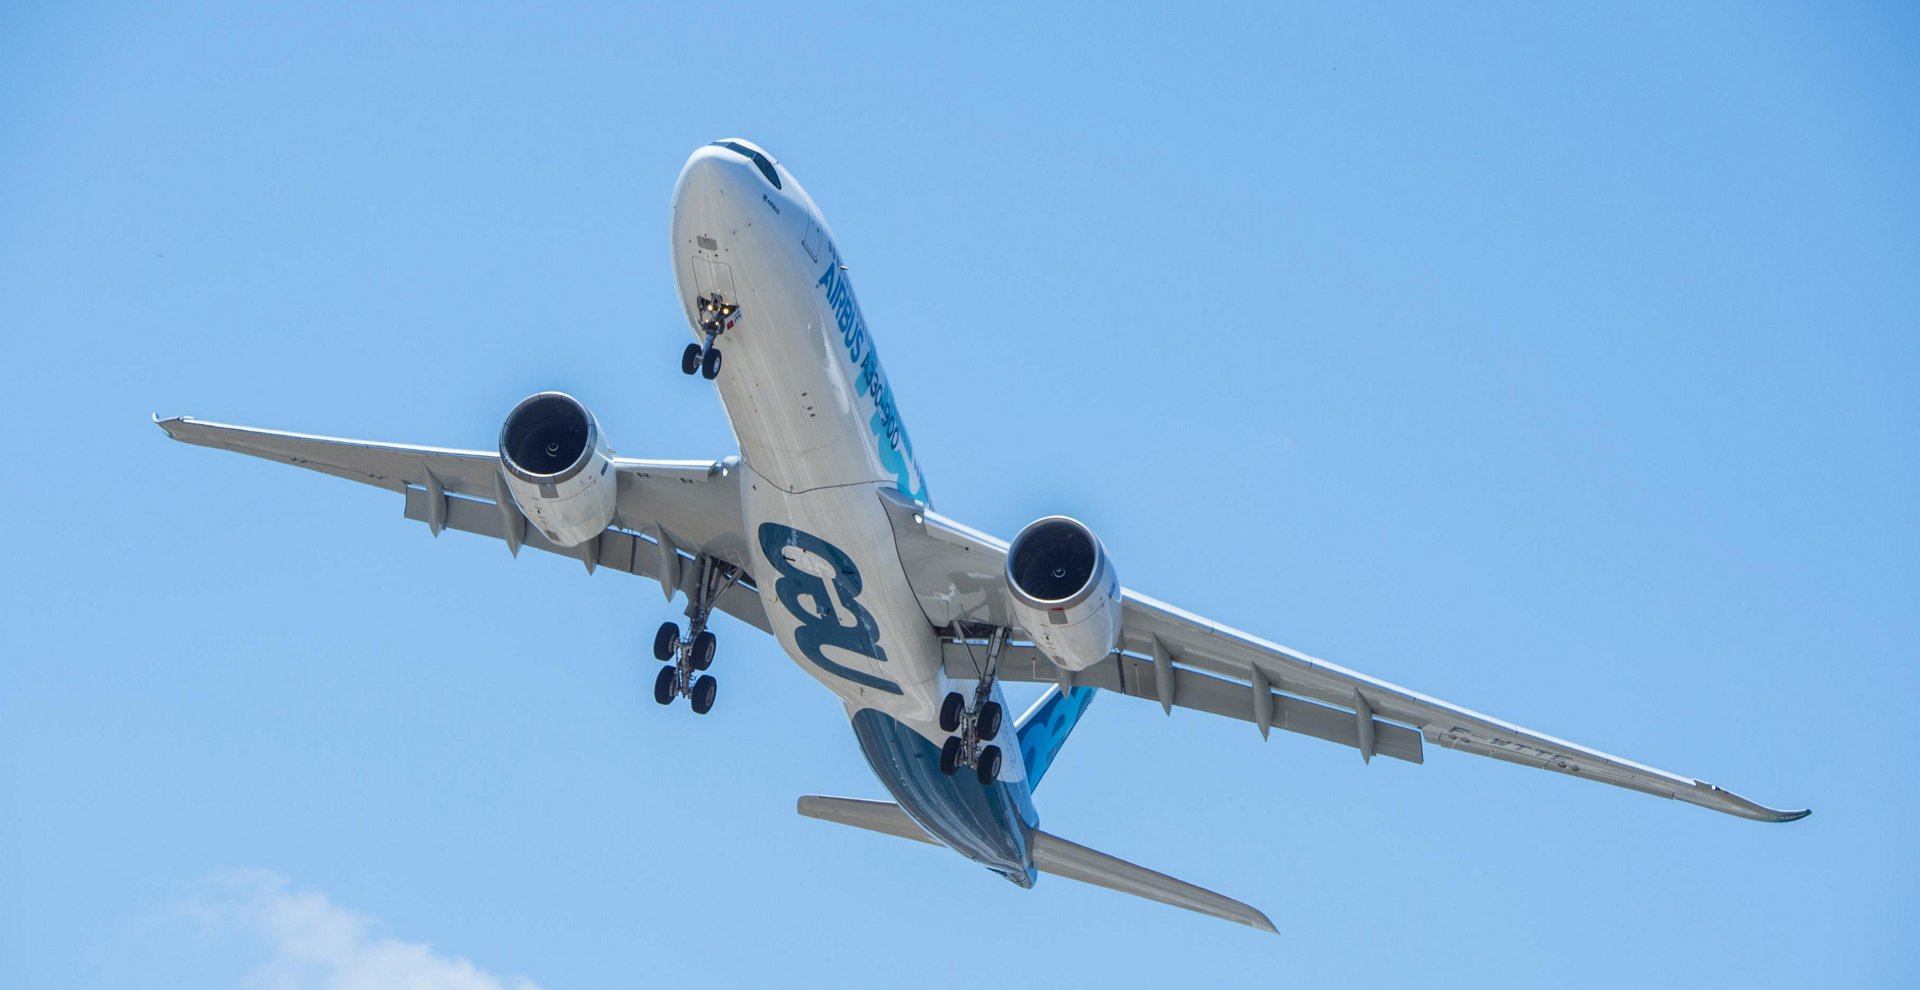 Schimbări la vârf: Airbus a devenit cel mai mare producător de avioane din lume, depăşind Boeing pentru prima dată din 2011